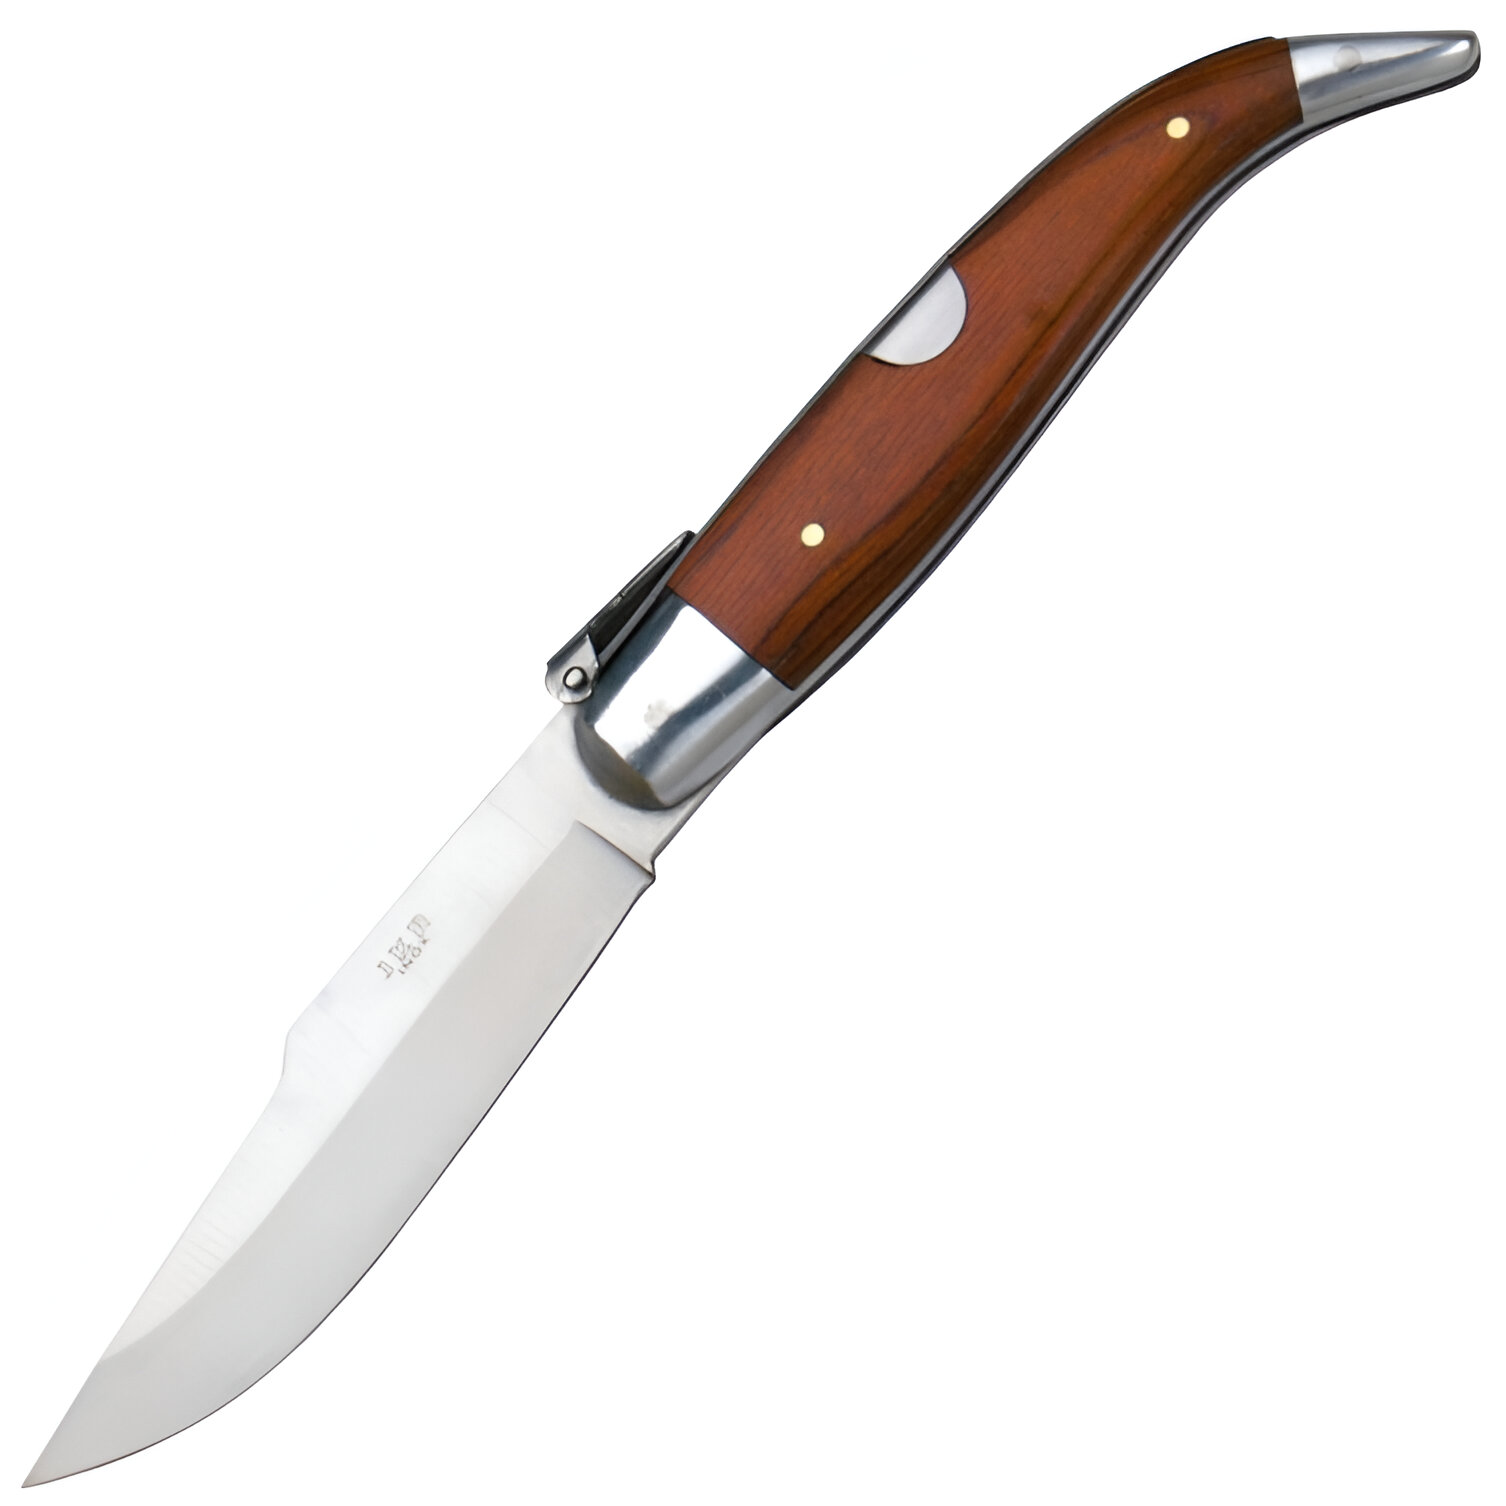 JKR Tradiční španělský zavírací nůž s čepelí 8 cm a střenkami z červeného dřeva